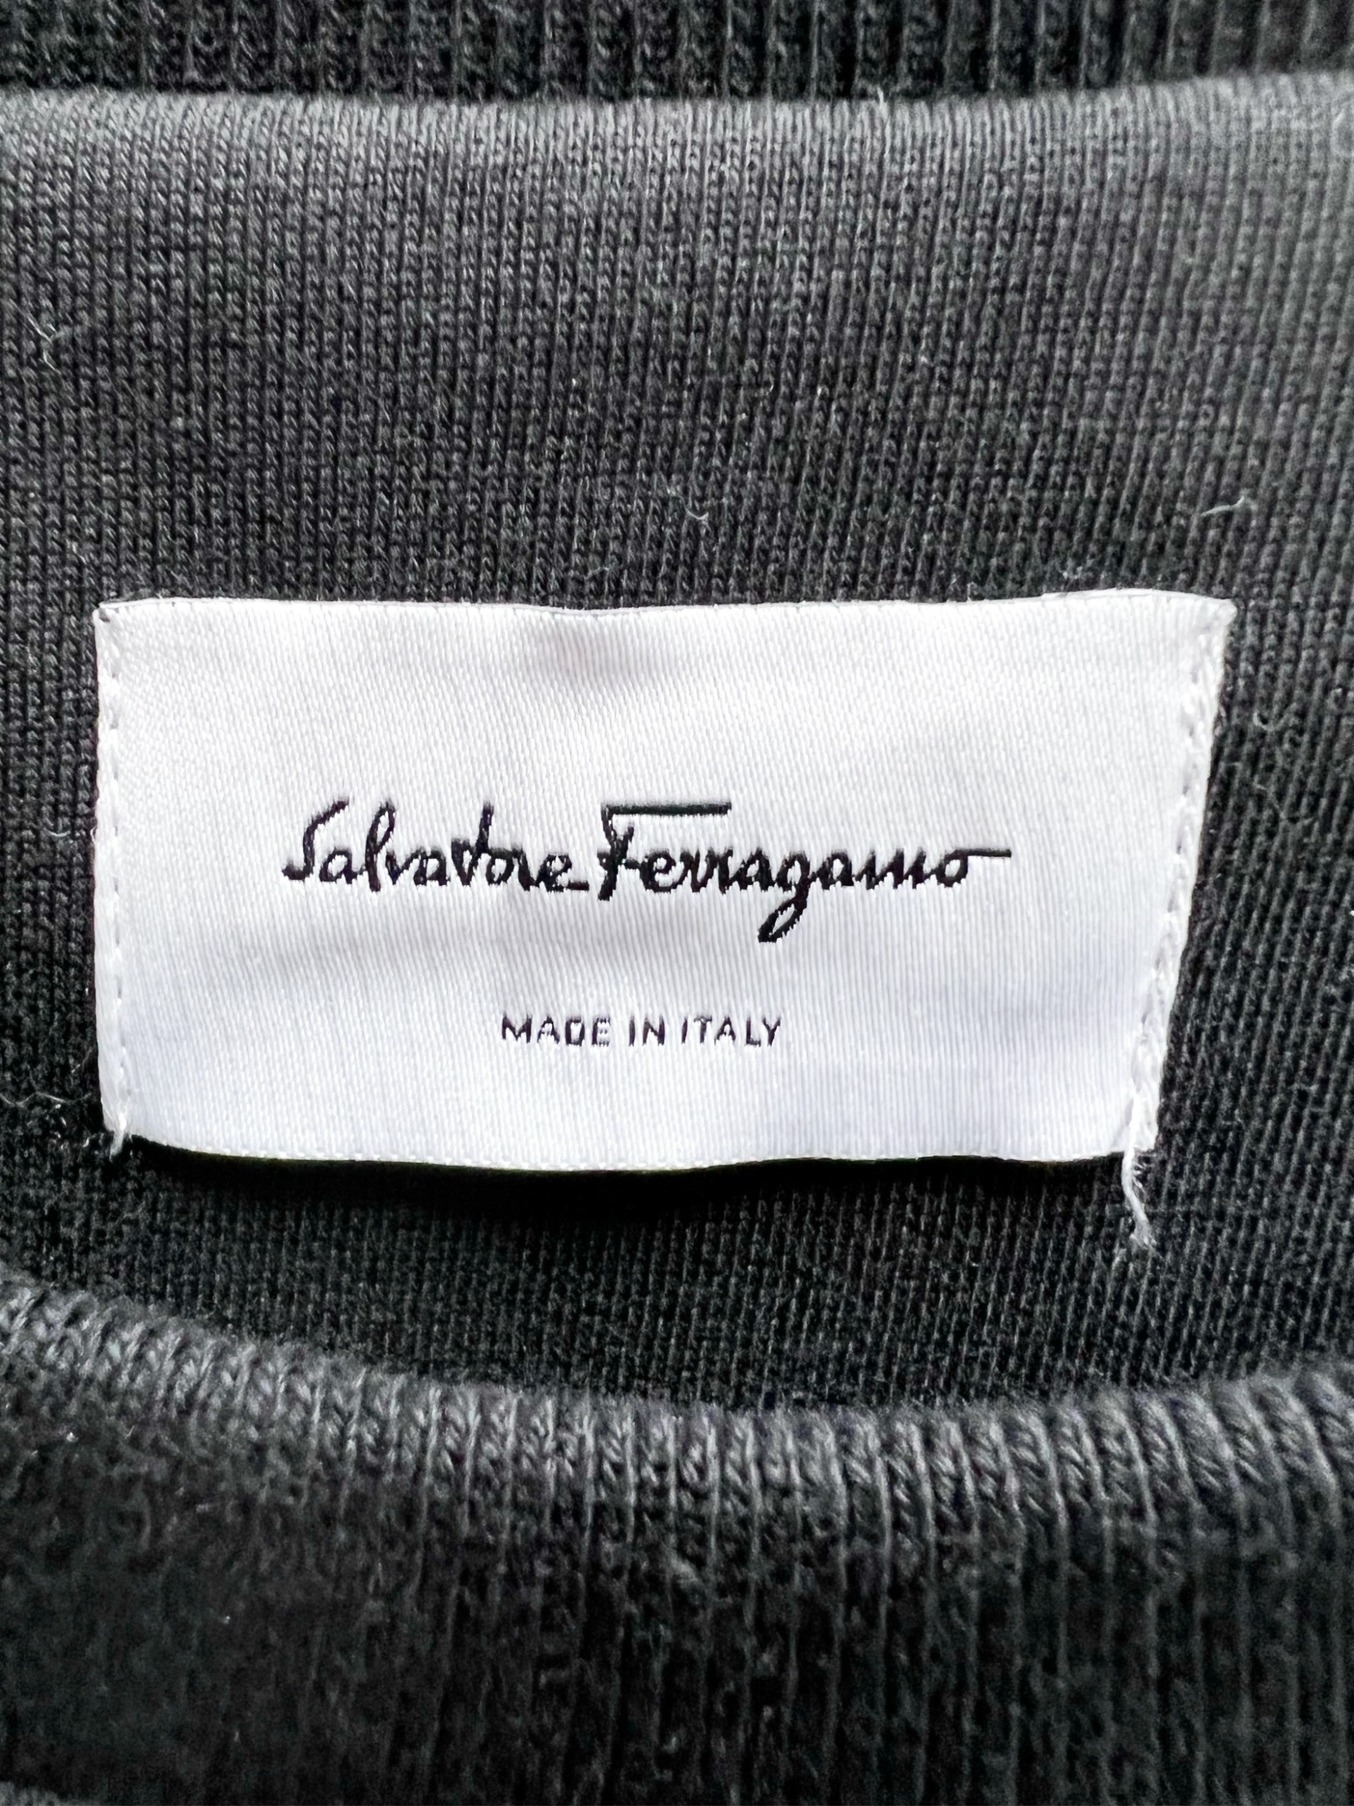 Salvatore Ferragamo (サルヴァトーレ フェラガモ) コットンスウェットシャツ ブラック サイズ:M